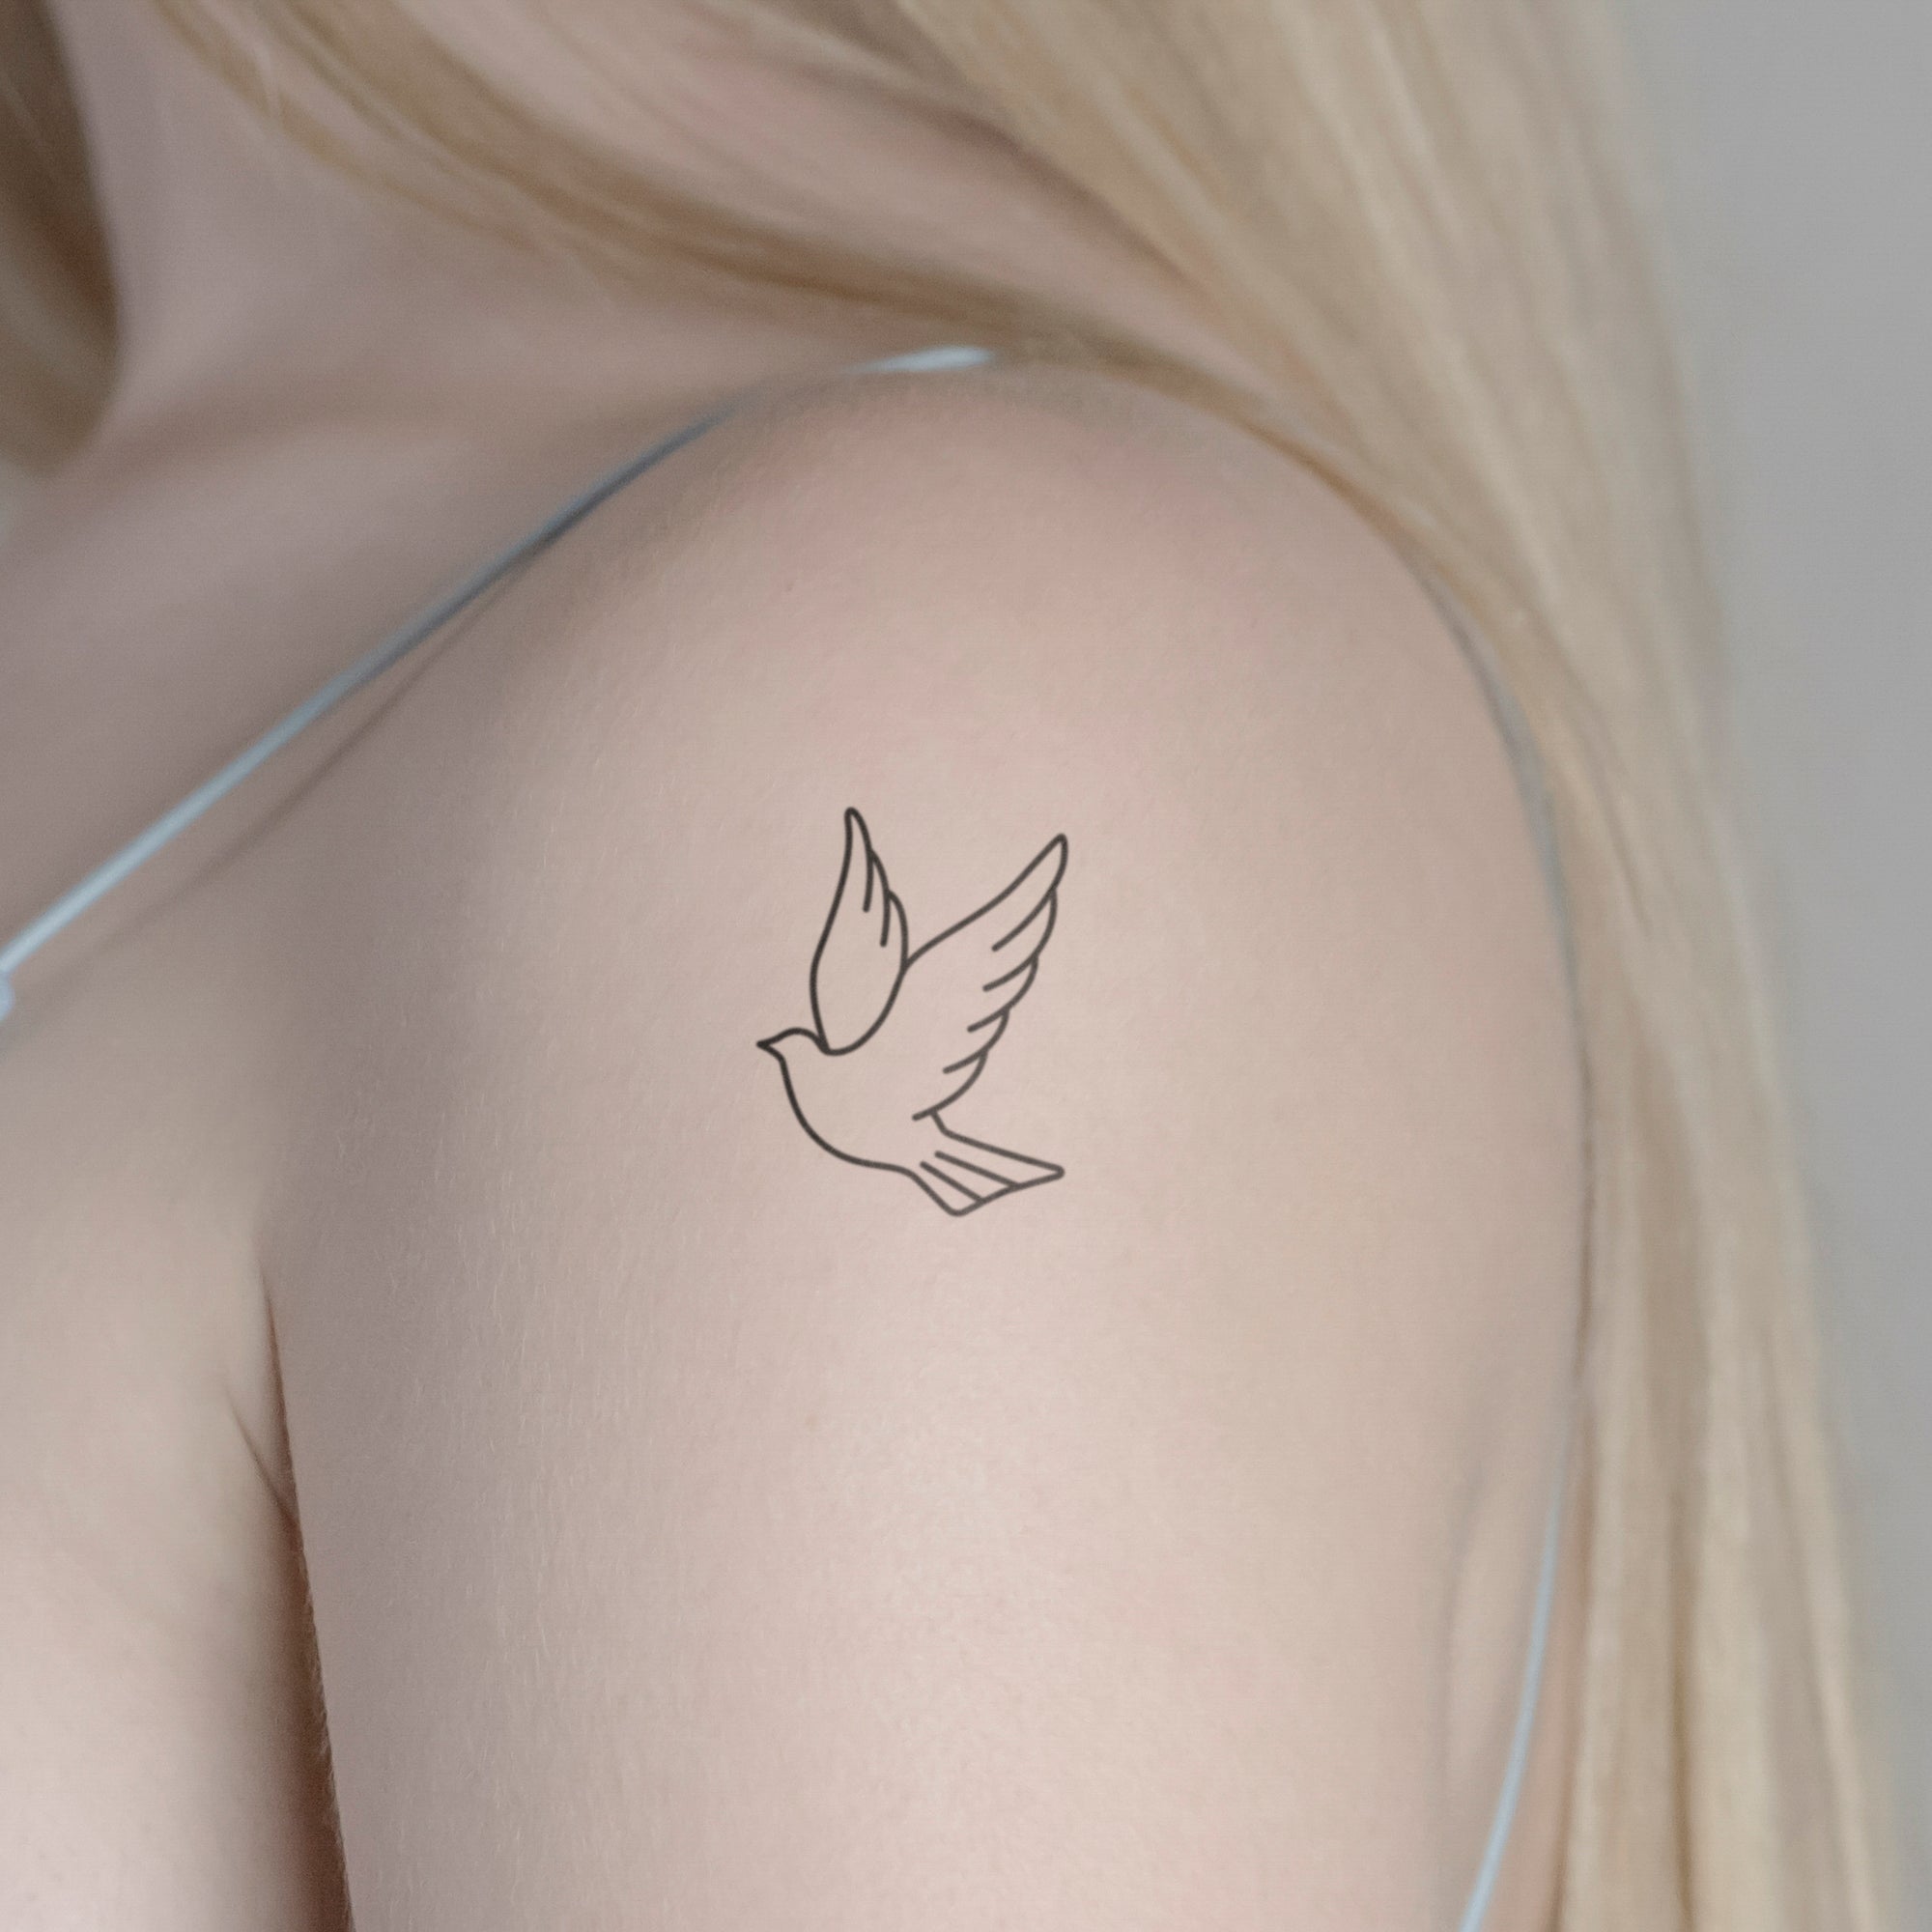 Weisse Taube Tattoo von minink, der Marke für temporäre Tattoos.